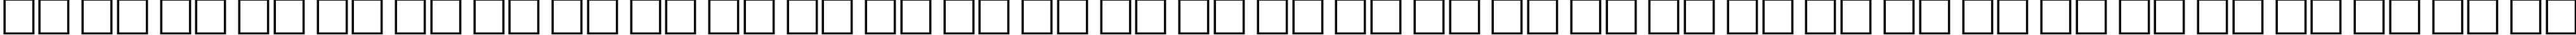 Пример написания русского алфавита шрифтом MontblancCTT